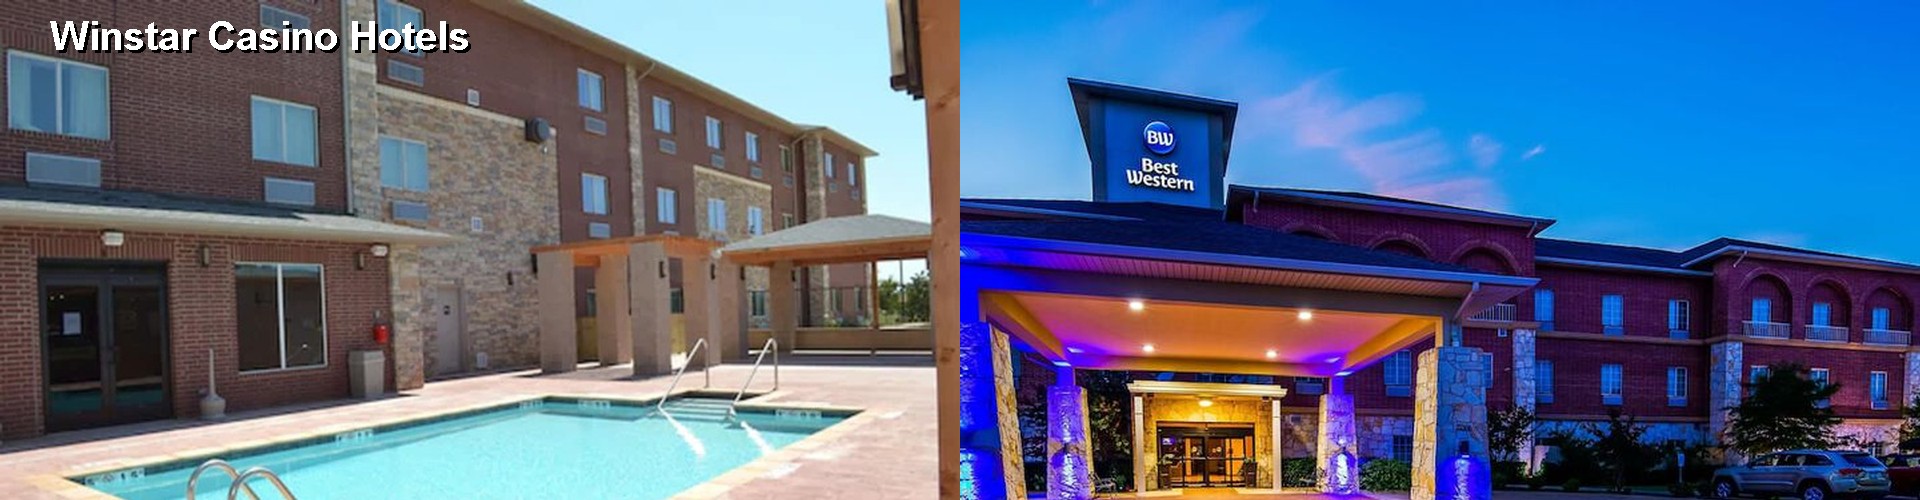 2 Best Hotels near Winstar Casino